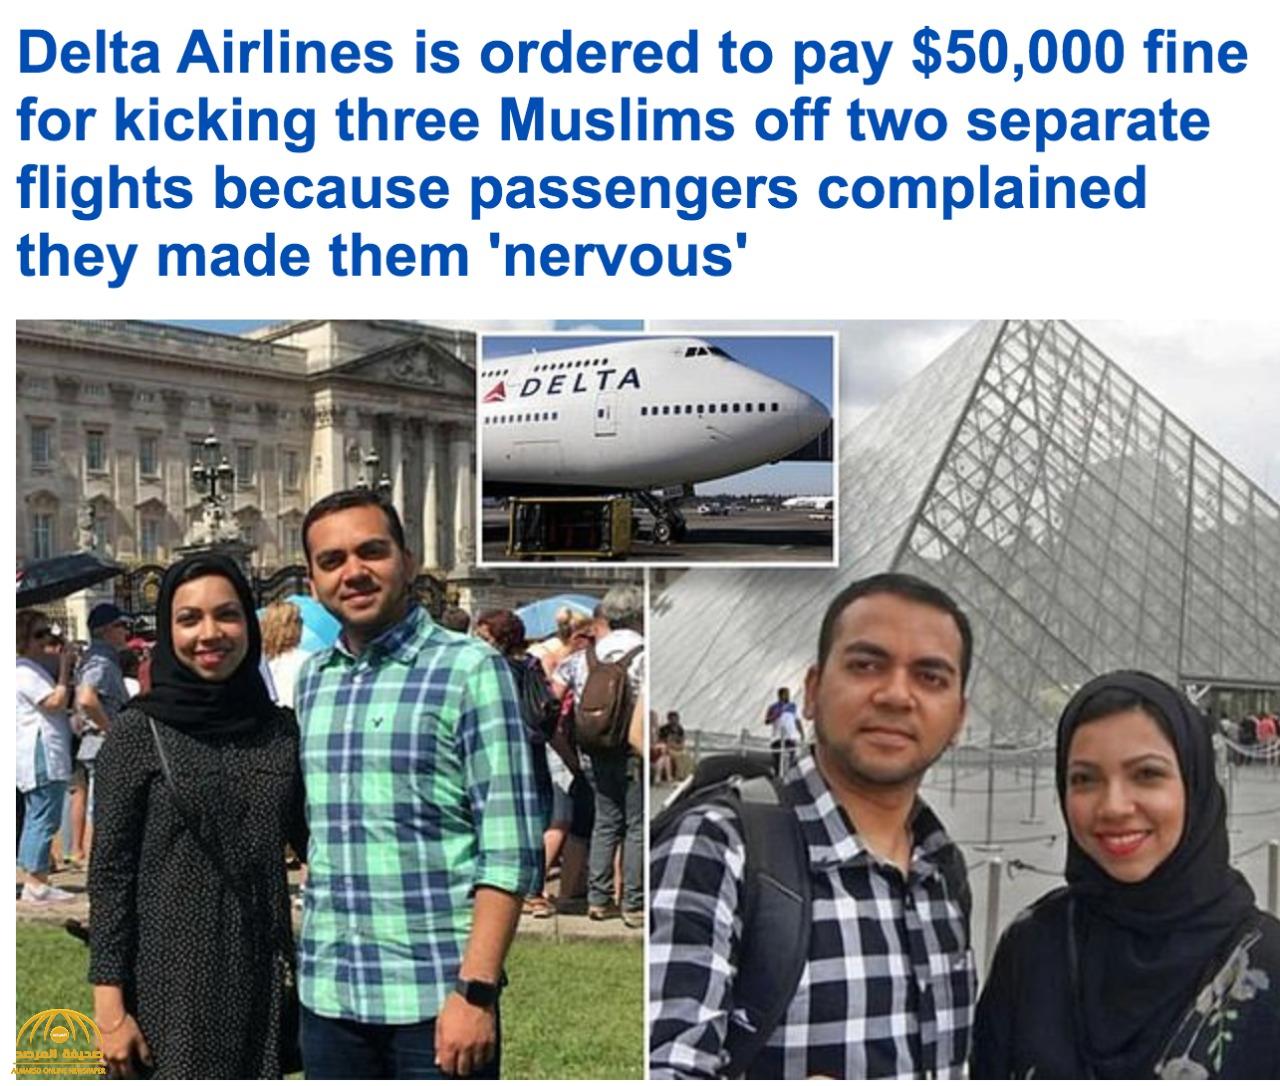 العدالة الأمريكية تنصف 3  "مسلمين" مسافرين على طائرة "دلتا إيرلاينز "بسبب  تهمة لا أساس لها! -صور